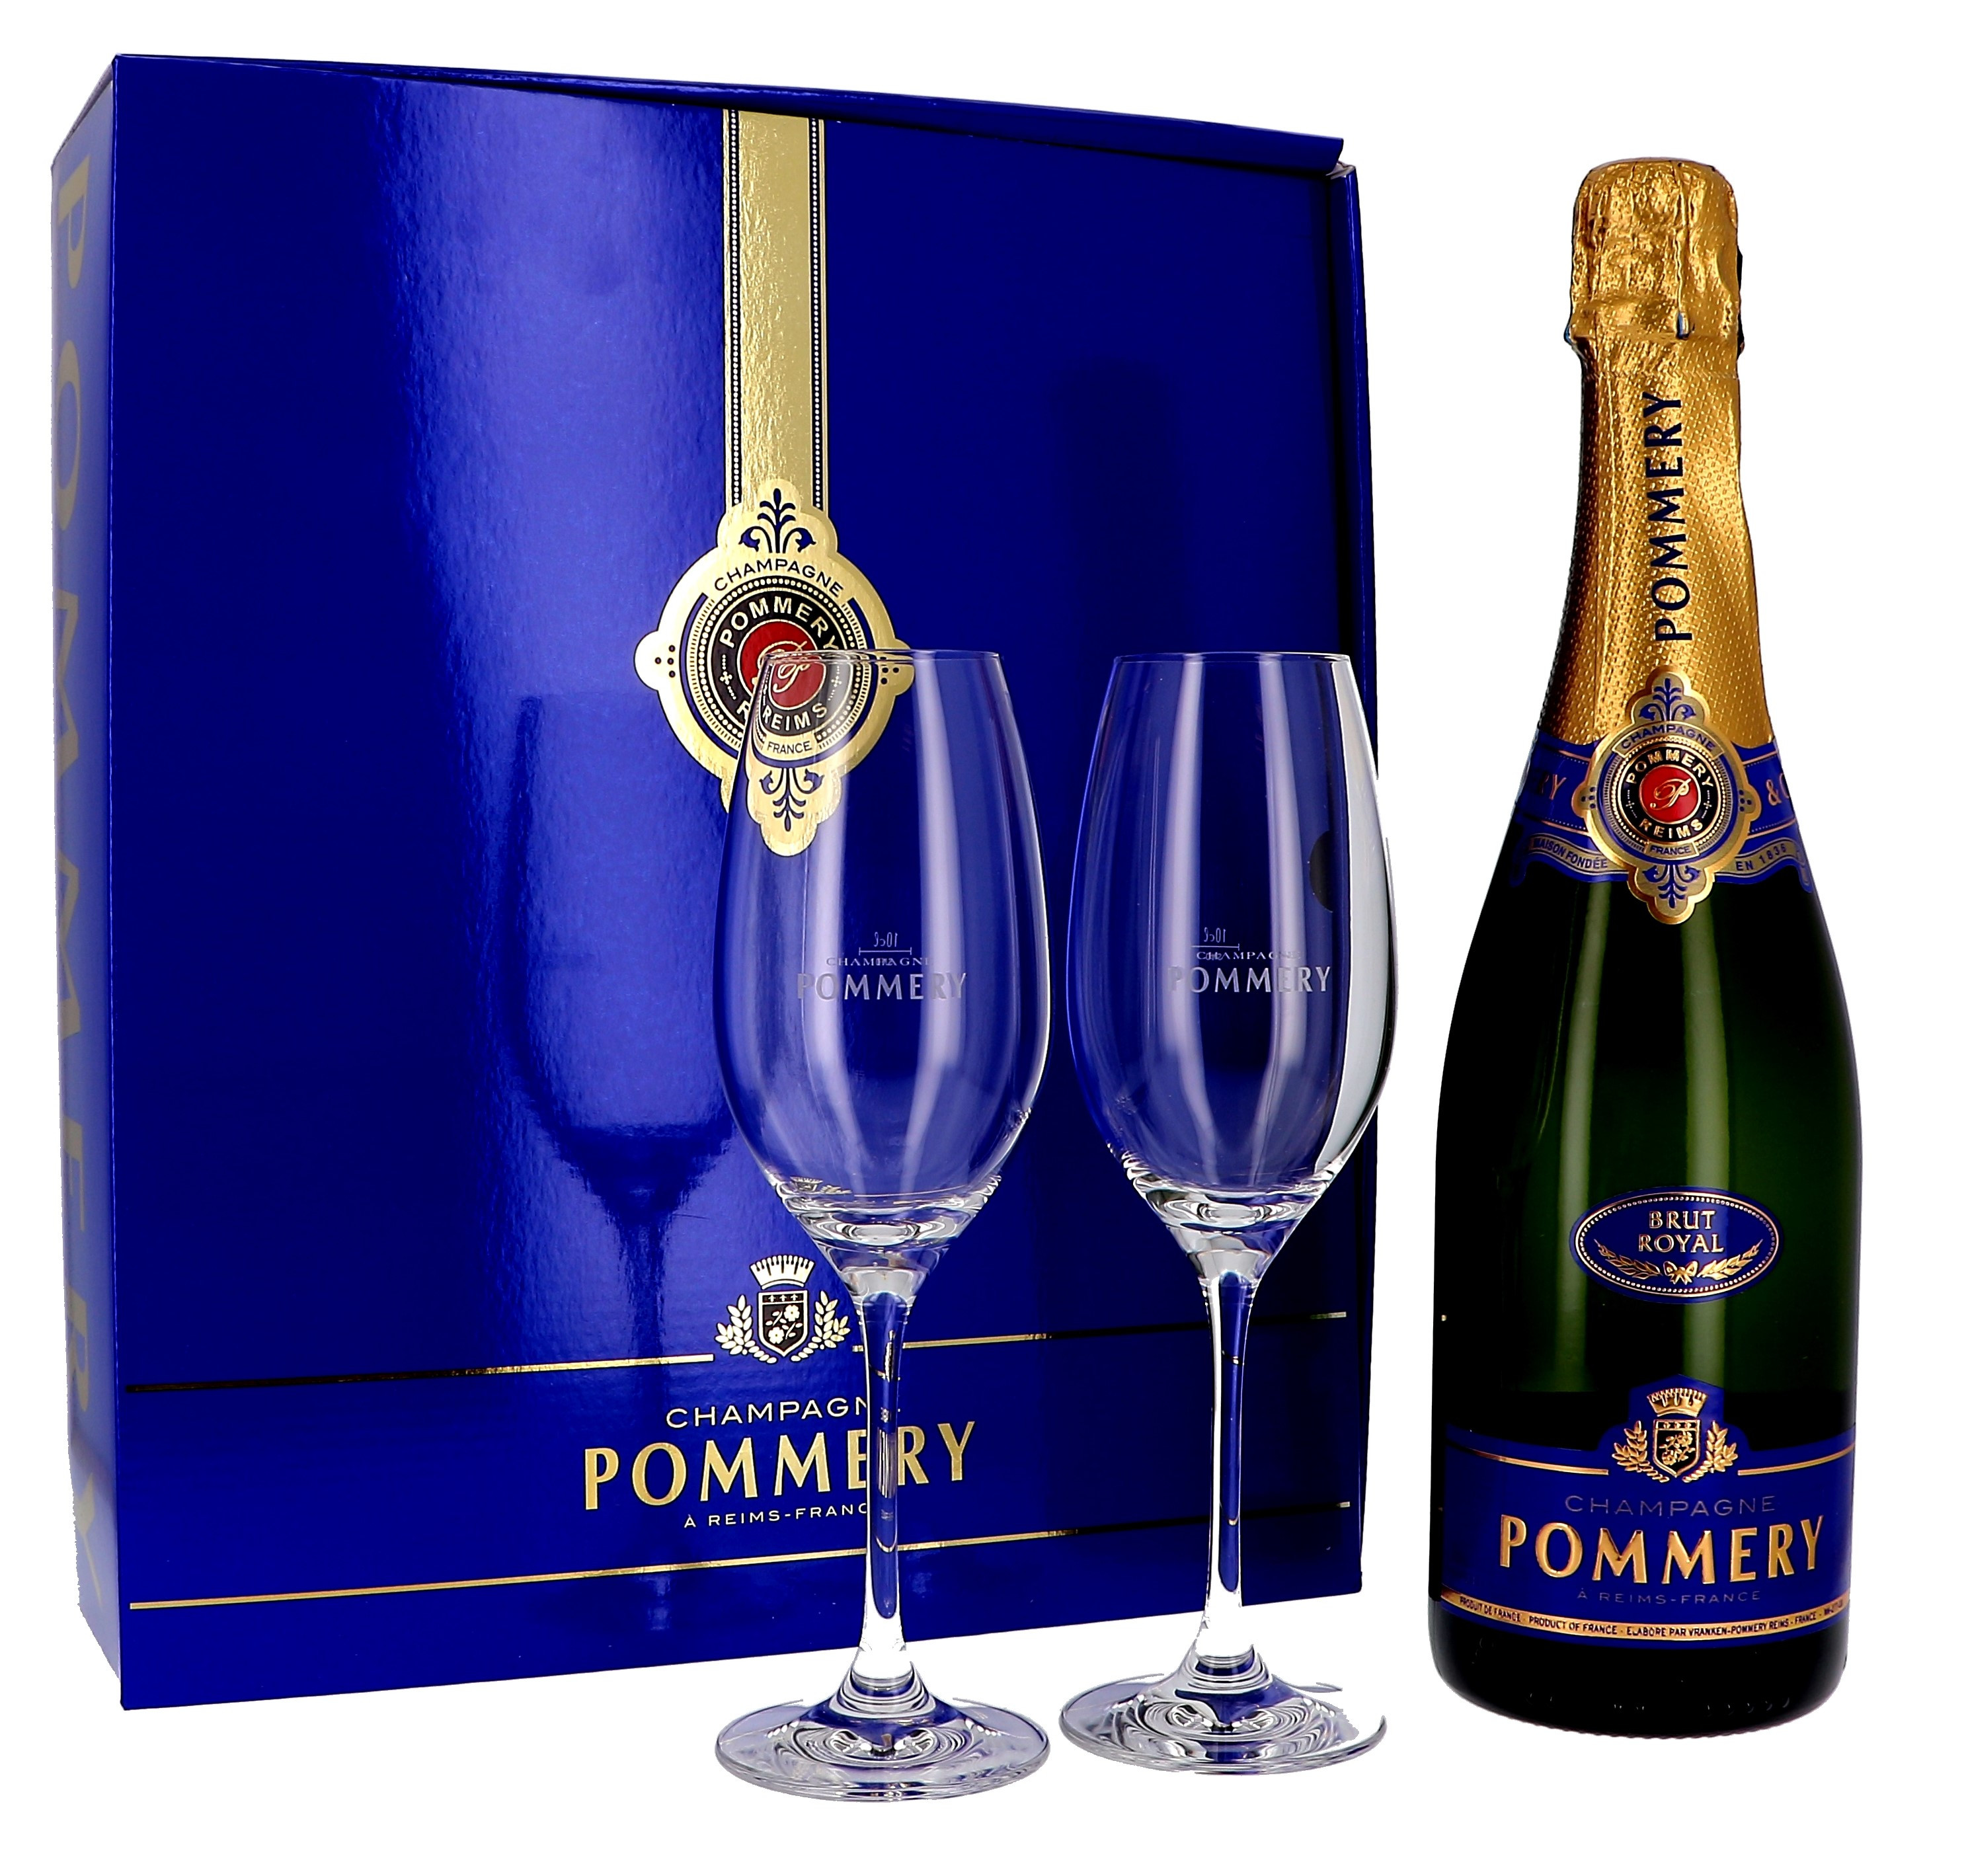 Tonen Nylon Vergelijkbaar Champagne Pommery Royal 75cl Brut + 2 glazen in geschenkverpakking Online  Kopen - Nevejan